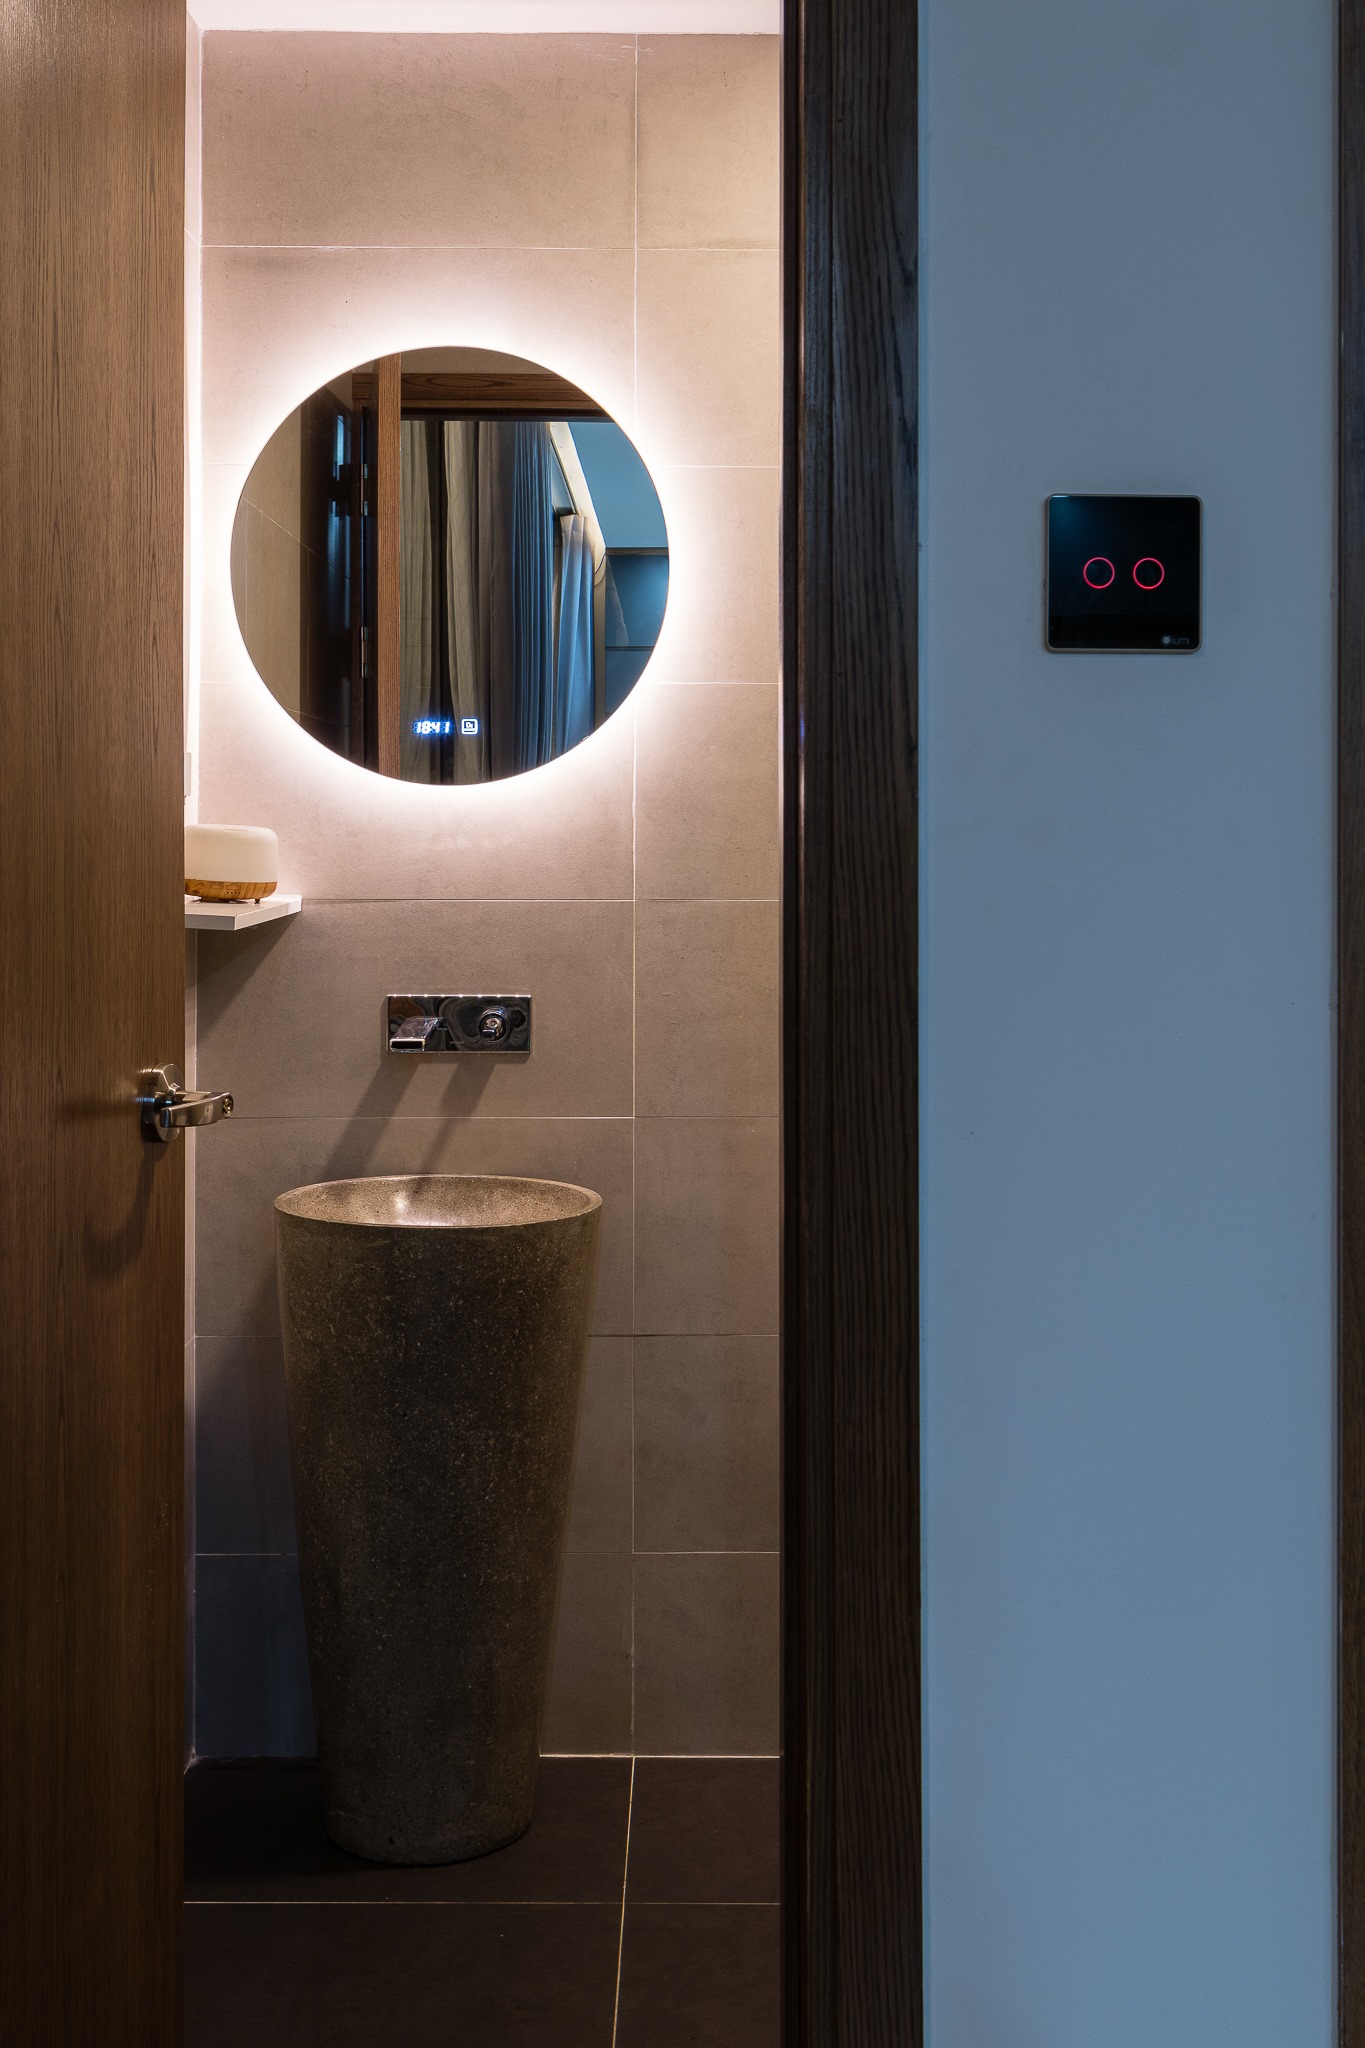 hình ảnh góc phòng tắm với bồn rửa lạ mắt, gương tròn tích hợp đèn LED ánh sáng trắng